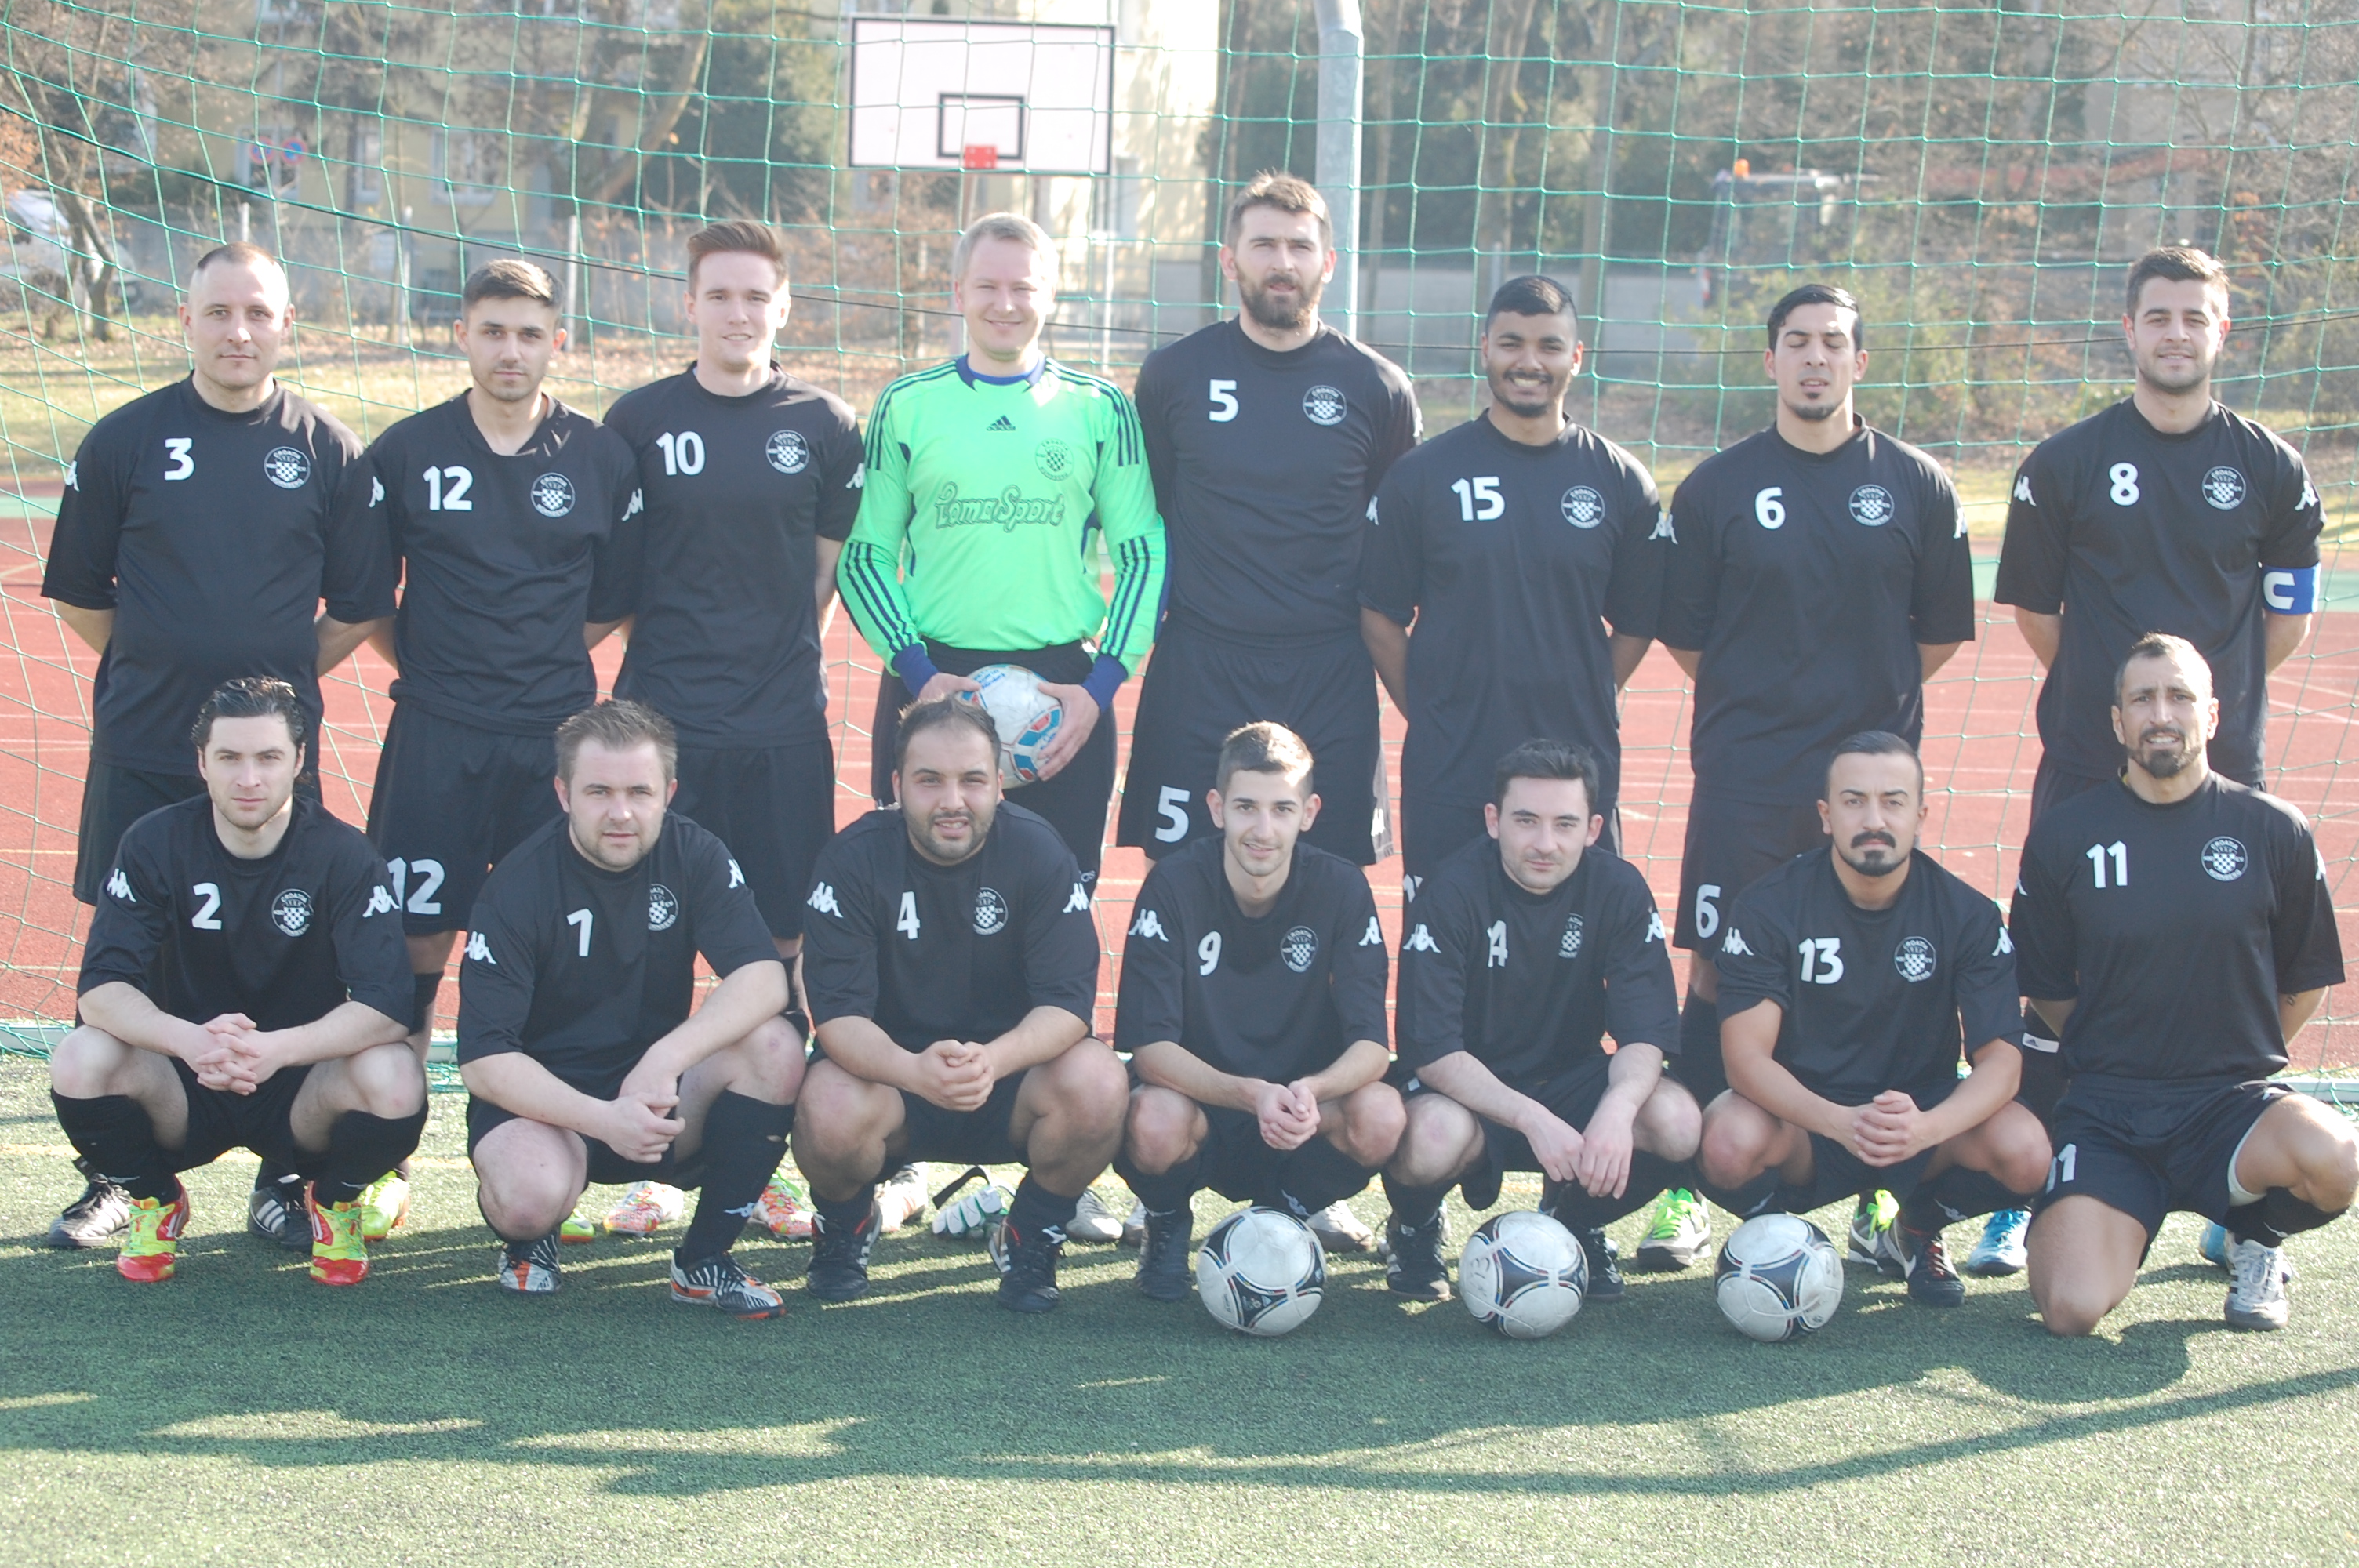 Mannschaftsfoto/Teamfoto von KSD Croatia Nbg.